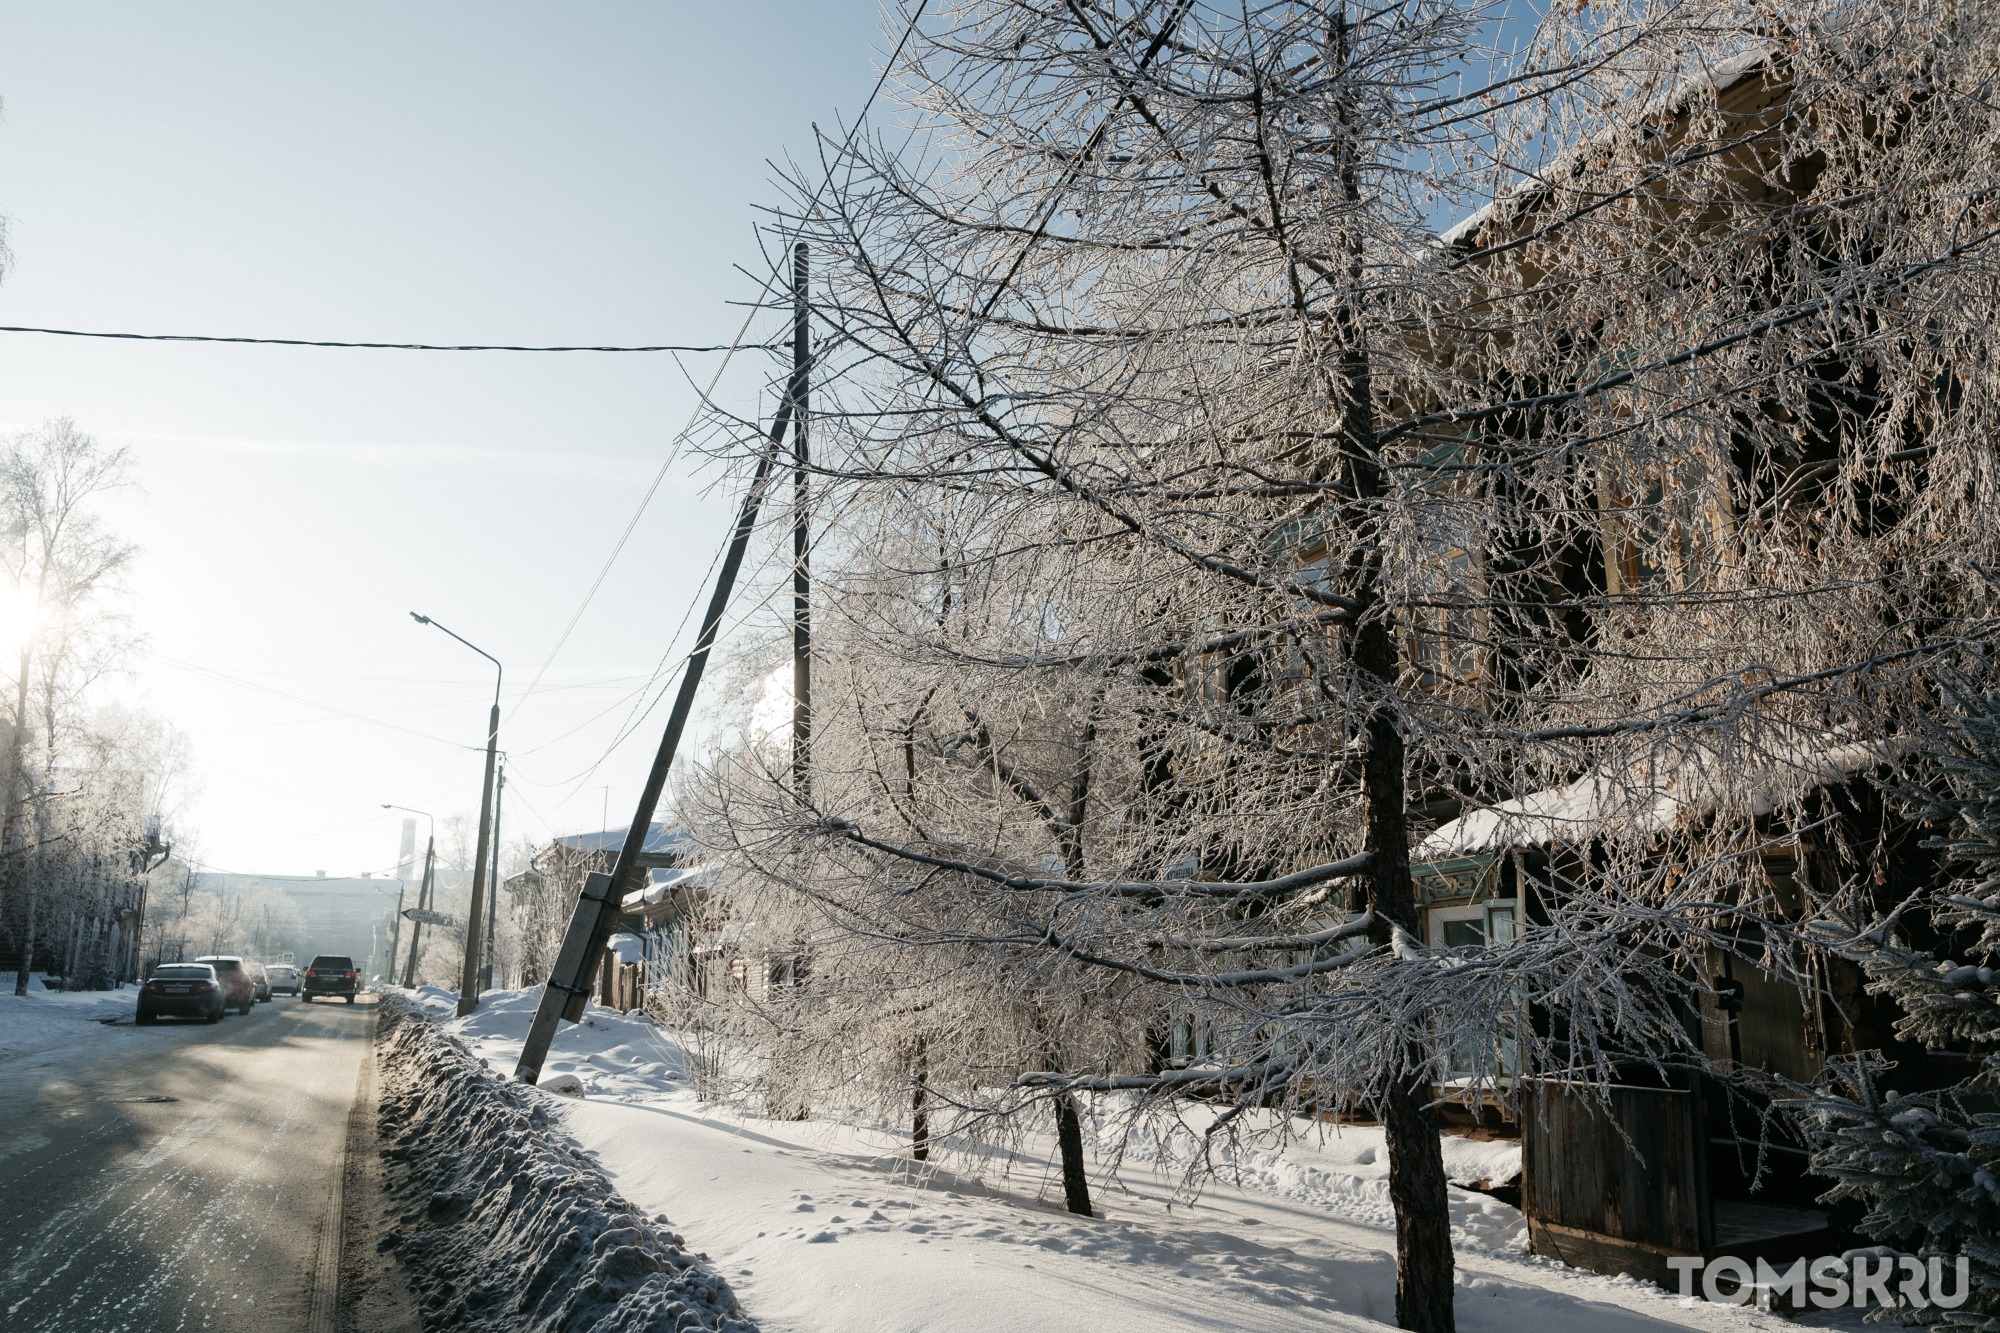 На все выходные в Томске вводится режим неблагоприятных метеоусловий